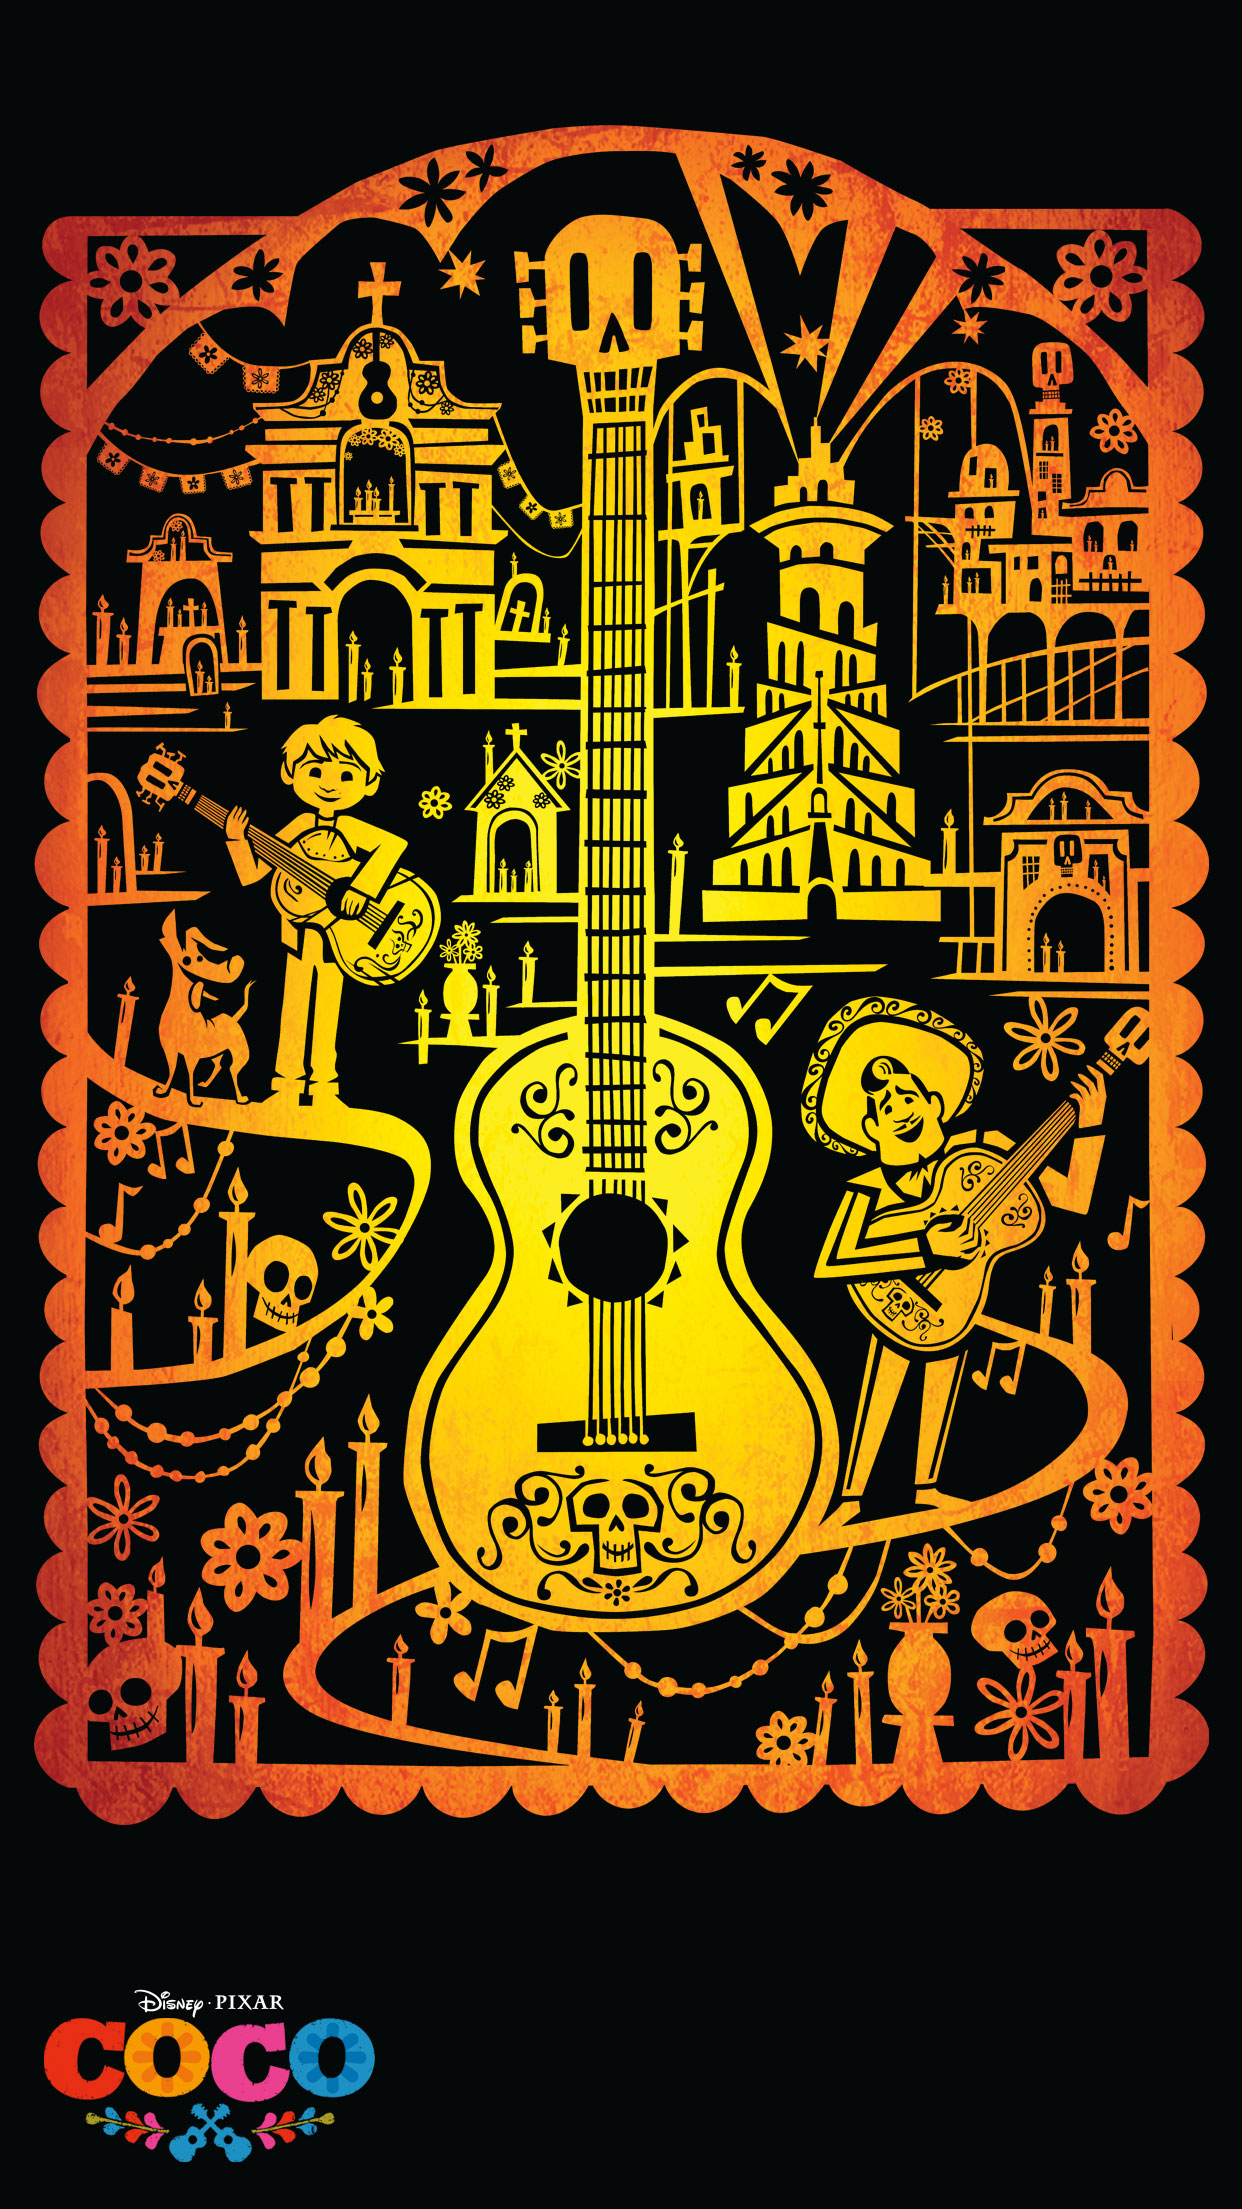 papier peint coc,instrument de musique,guitare,instruments à cordes pincées,jaune,affiche